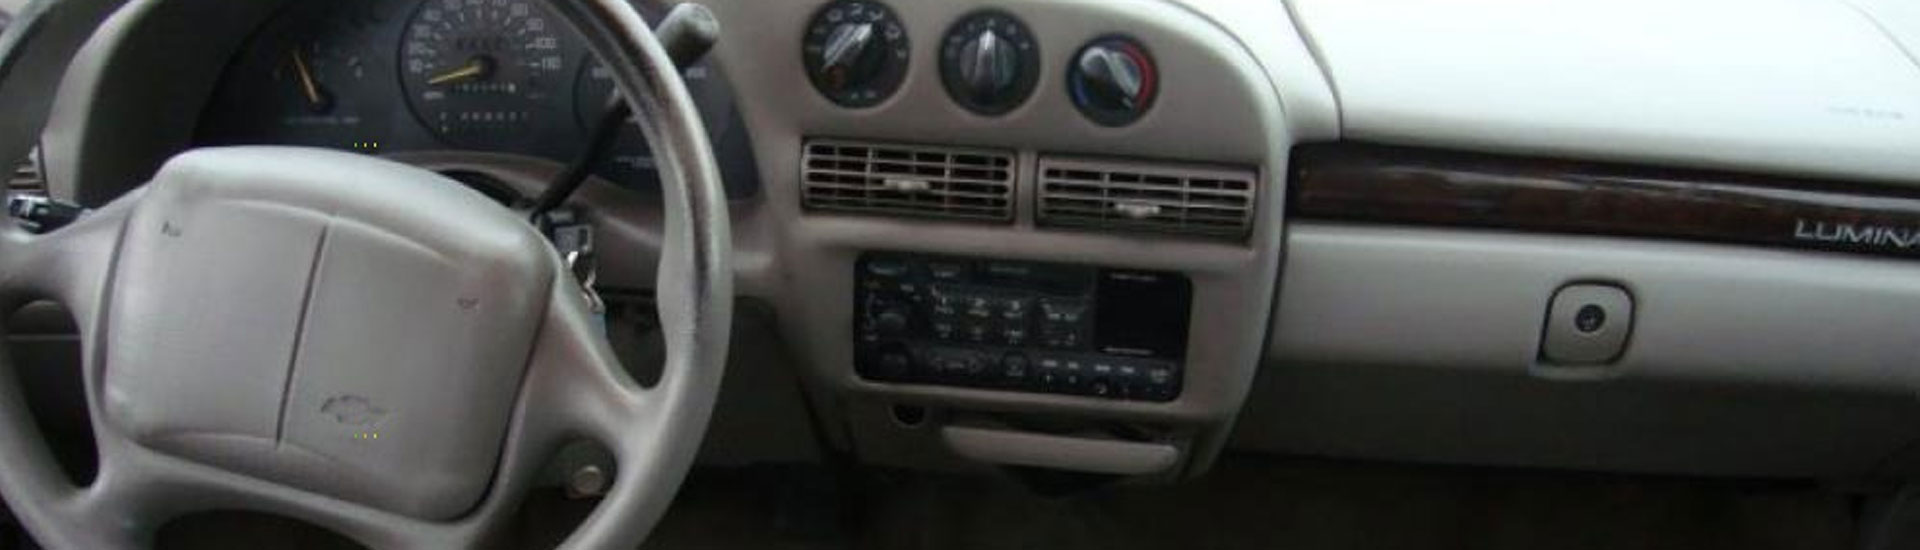 Chevrolet Lumina Dash Kits